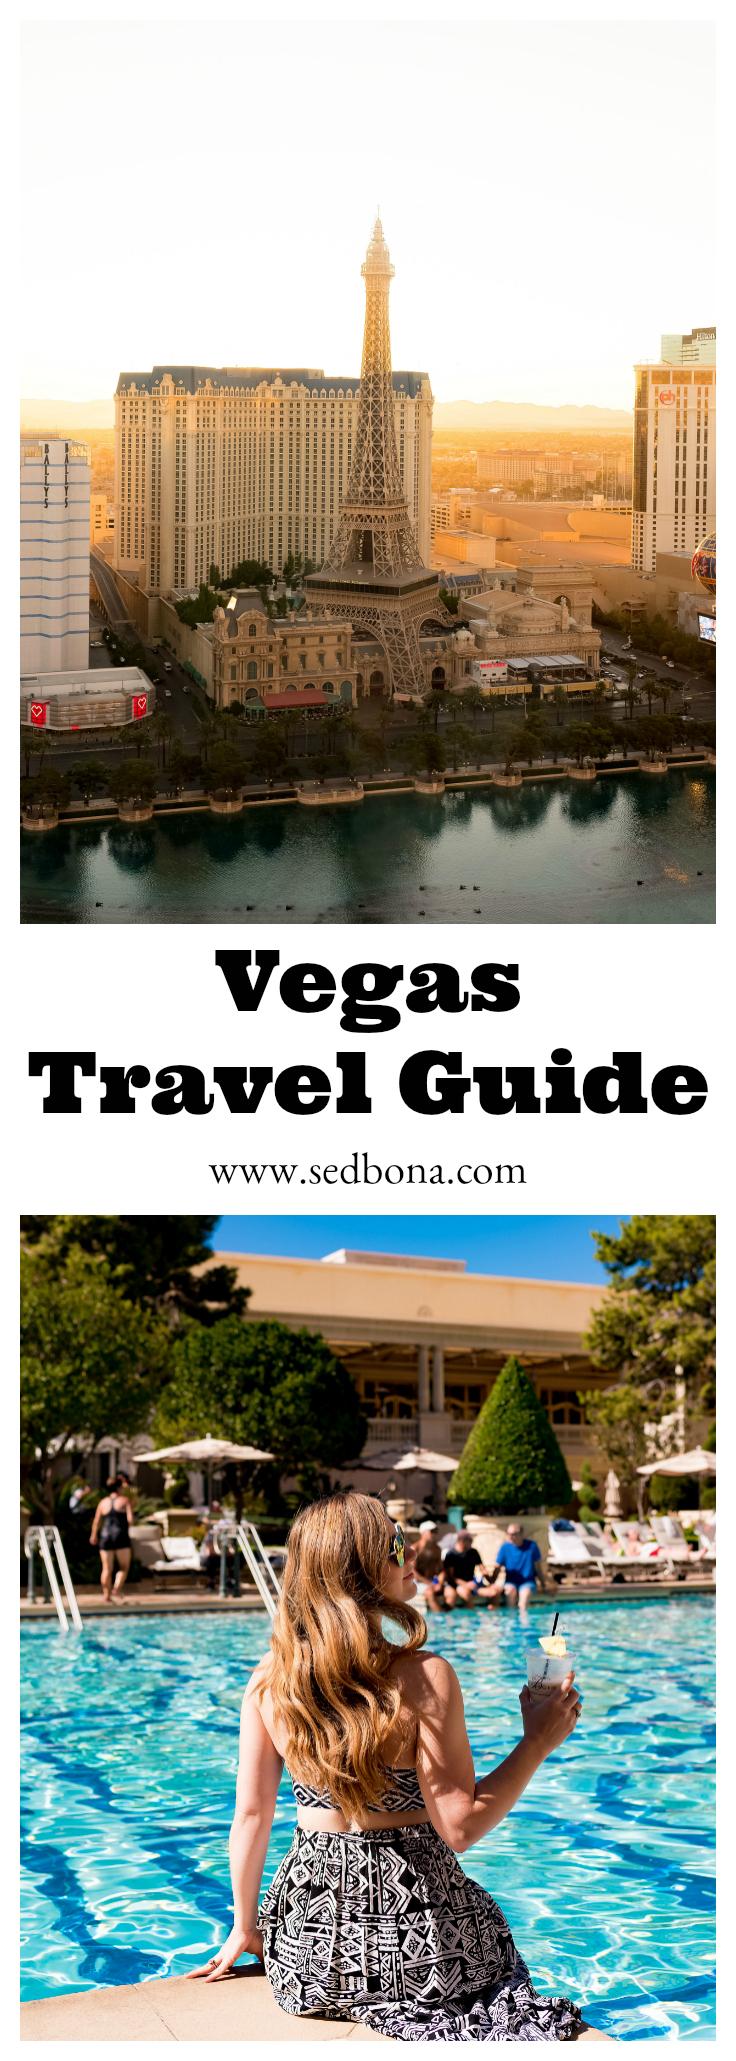 Vegas Travel Guide Sed Bona